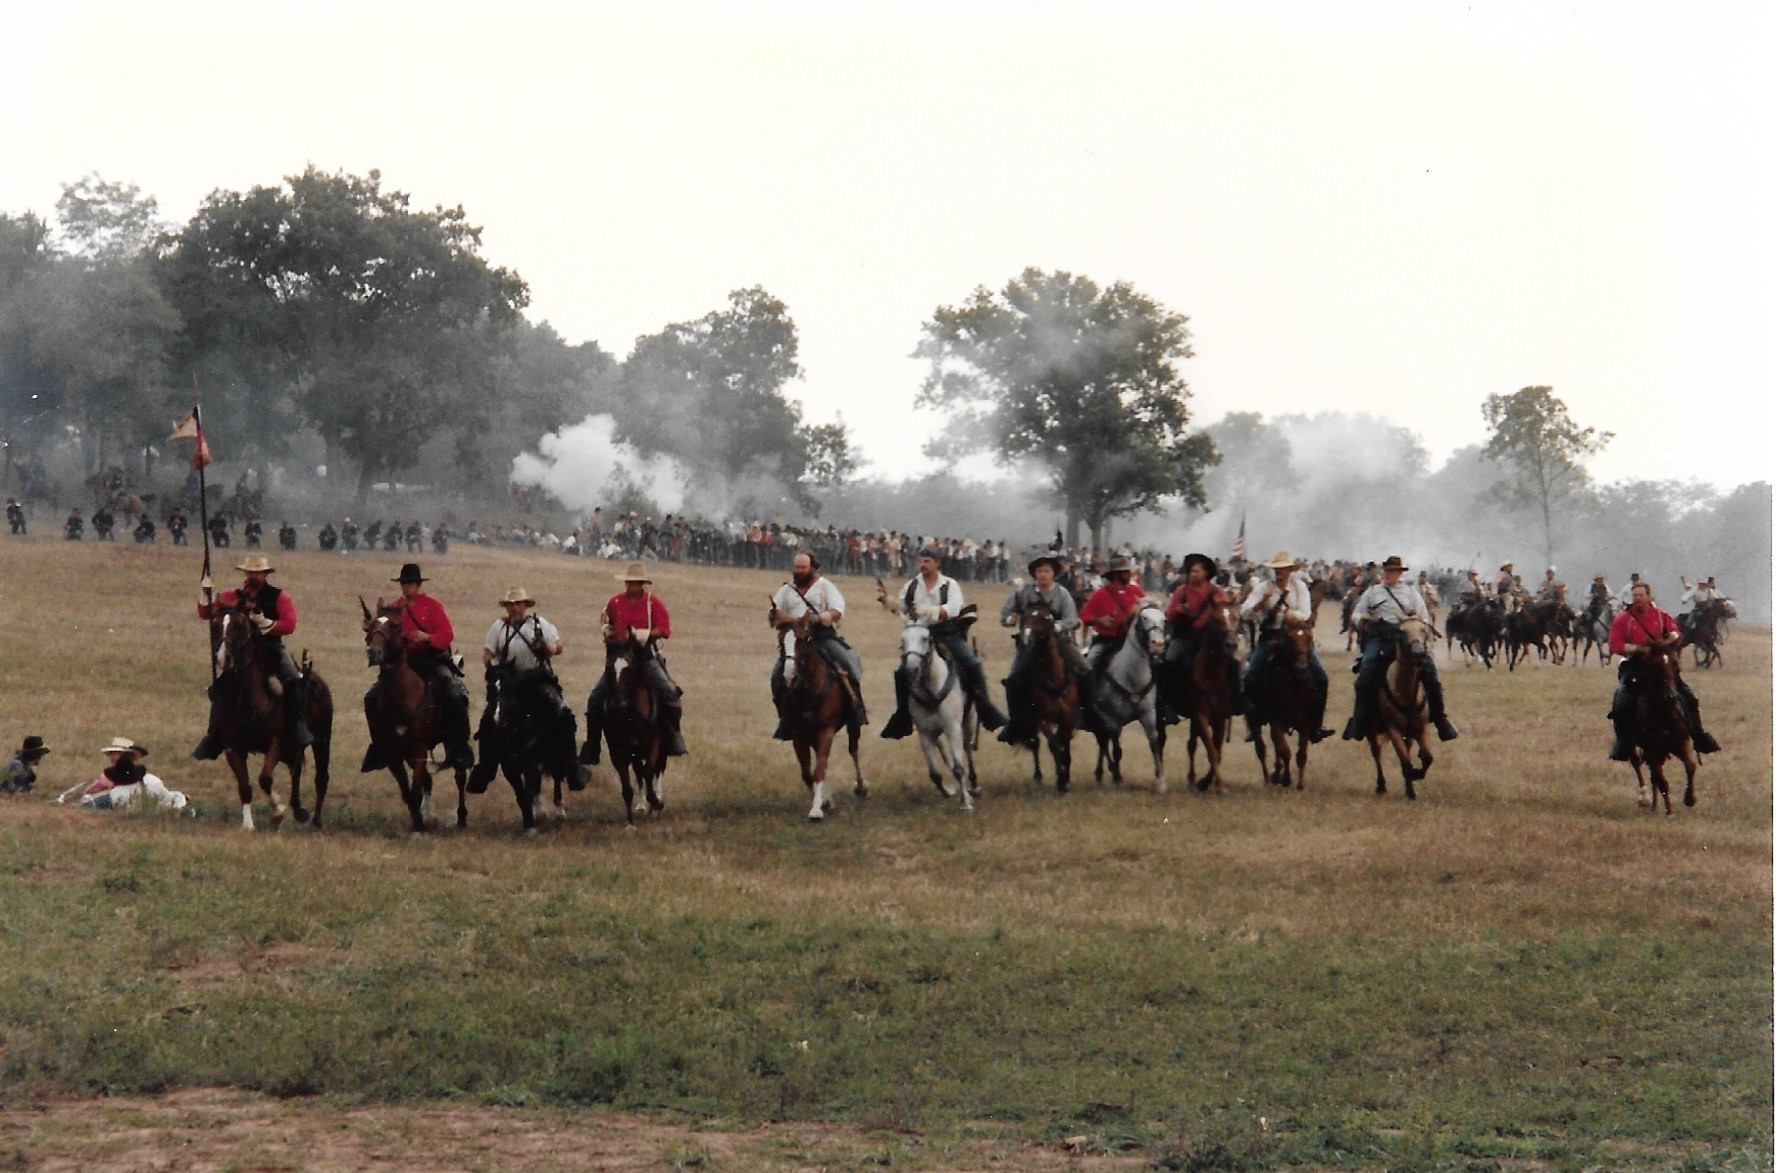 Men on horseback in a field